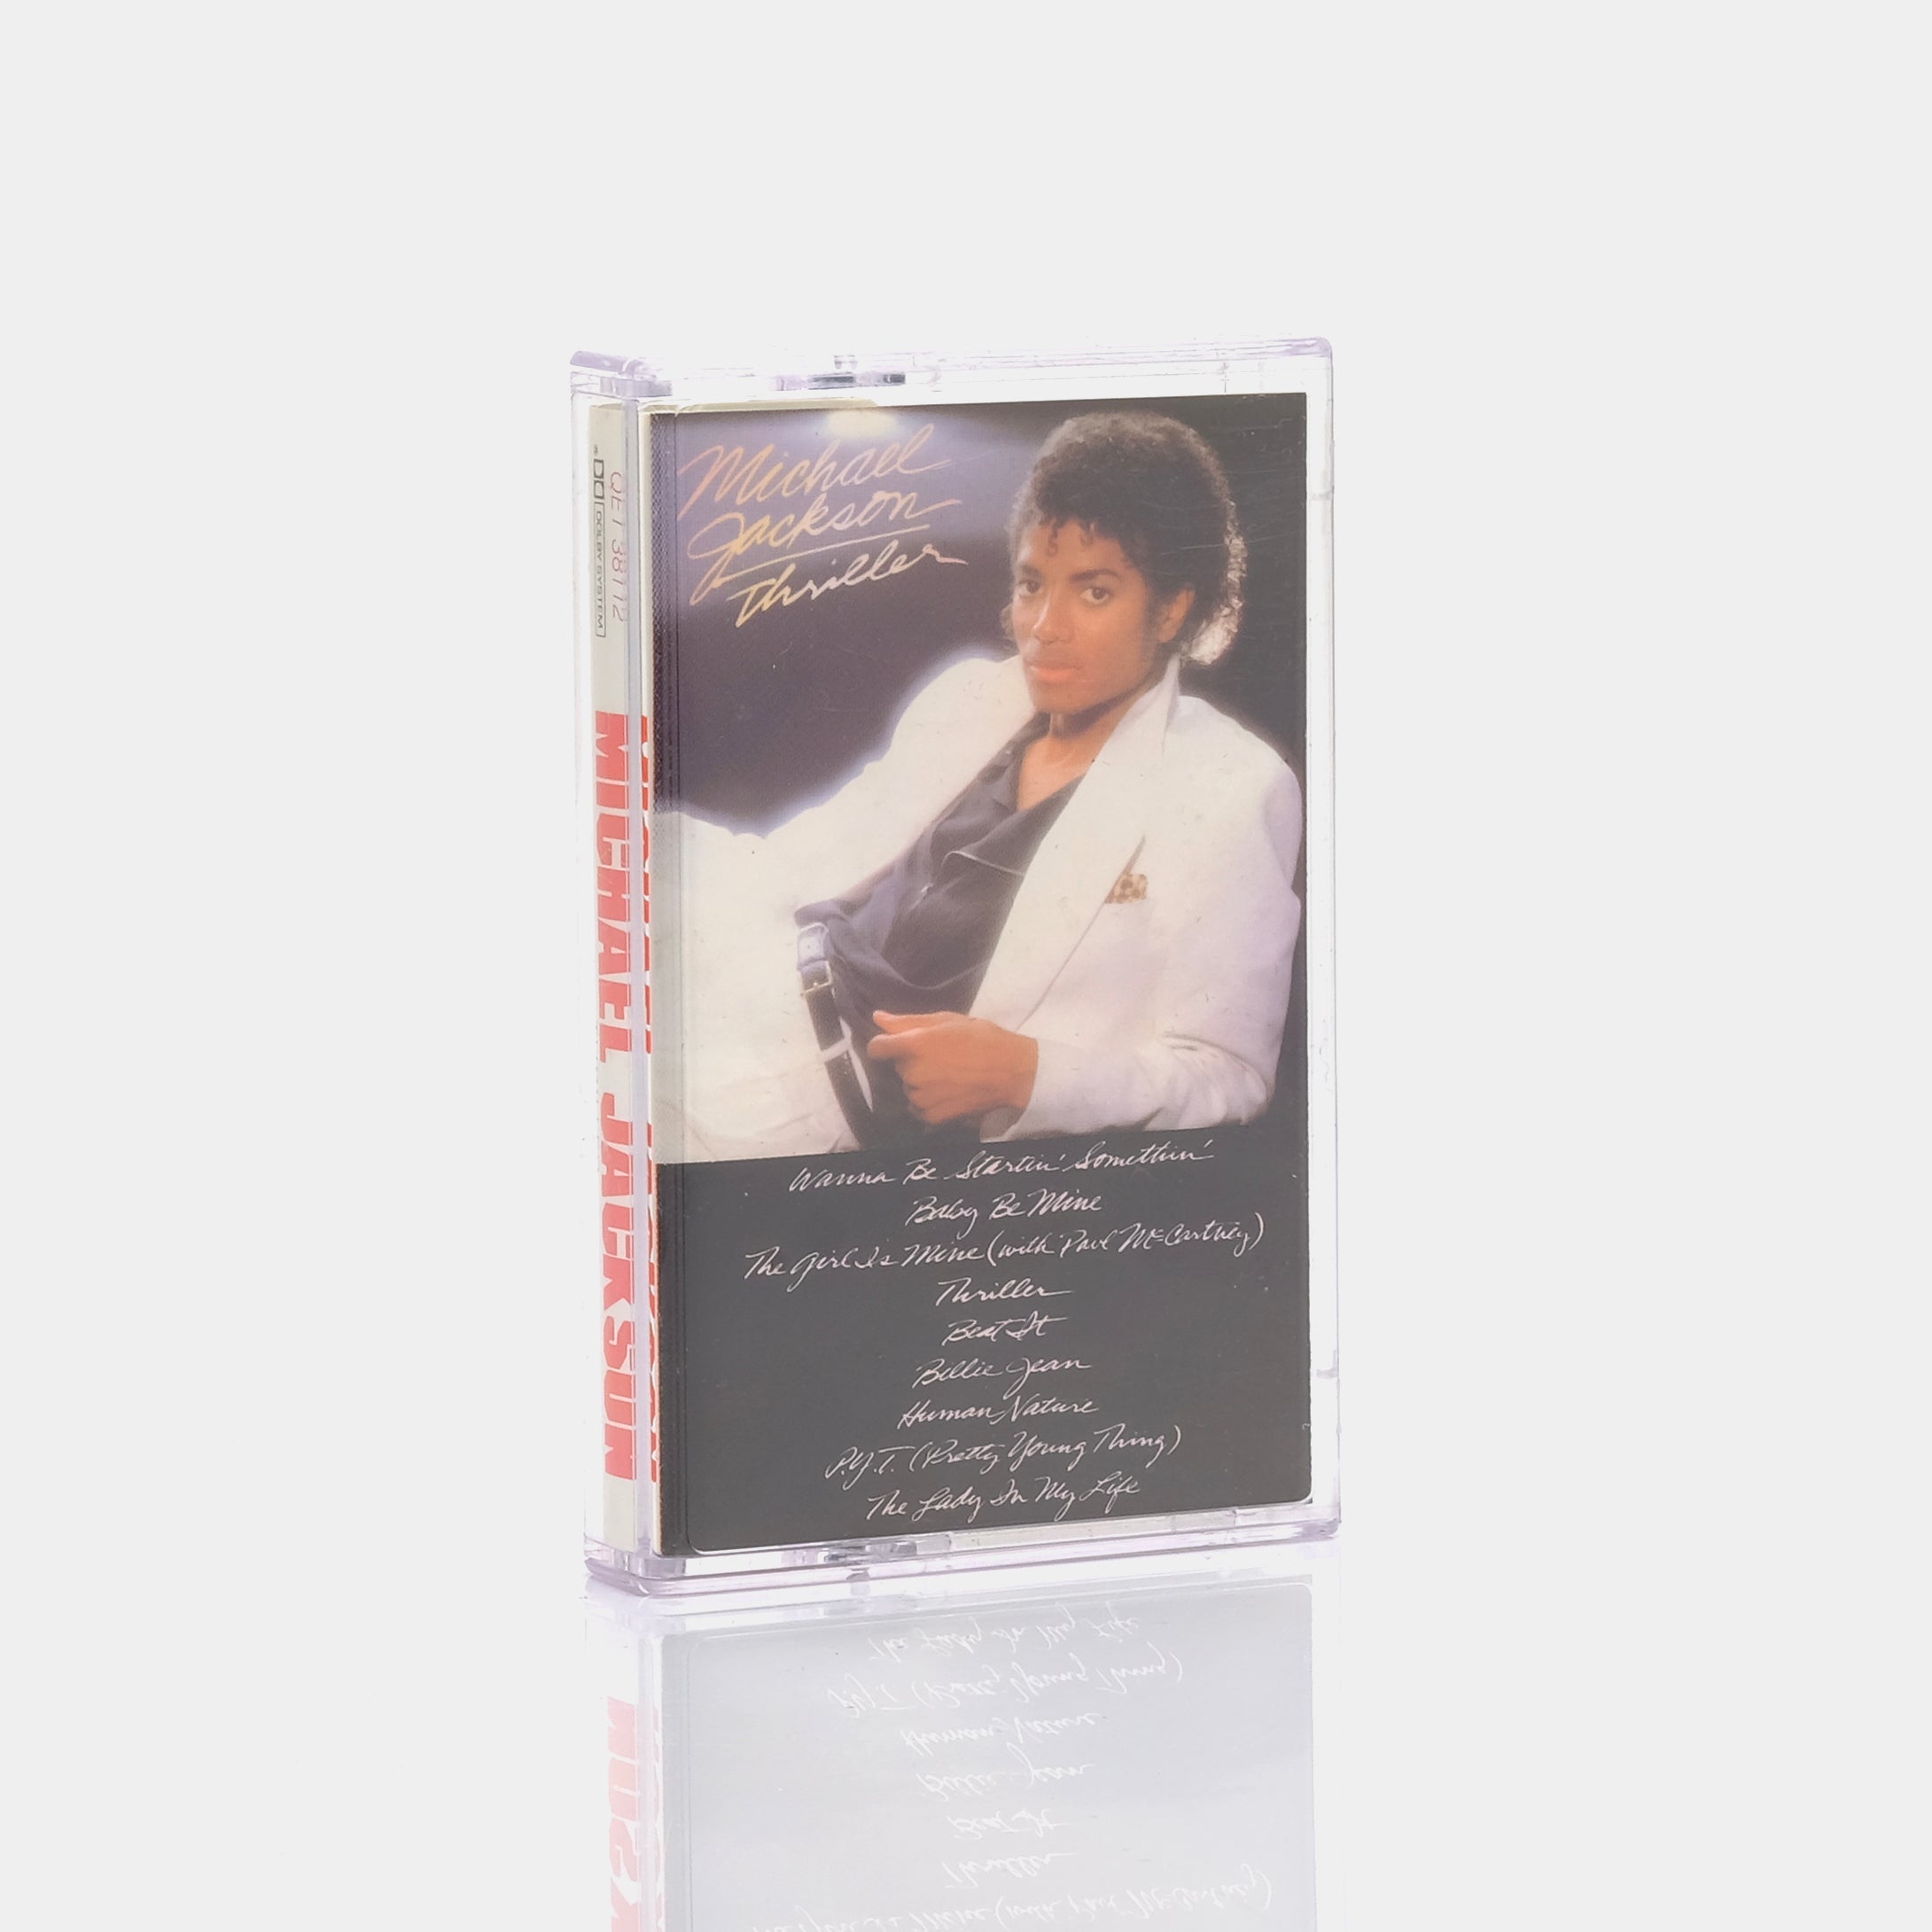 Michael Jackson - Thriller Cassette Tape